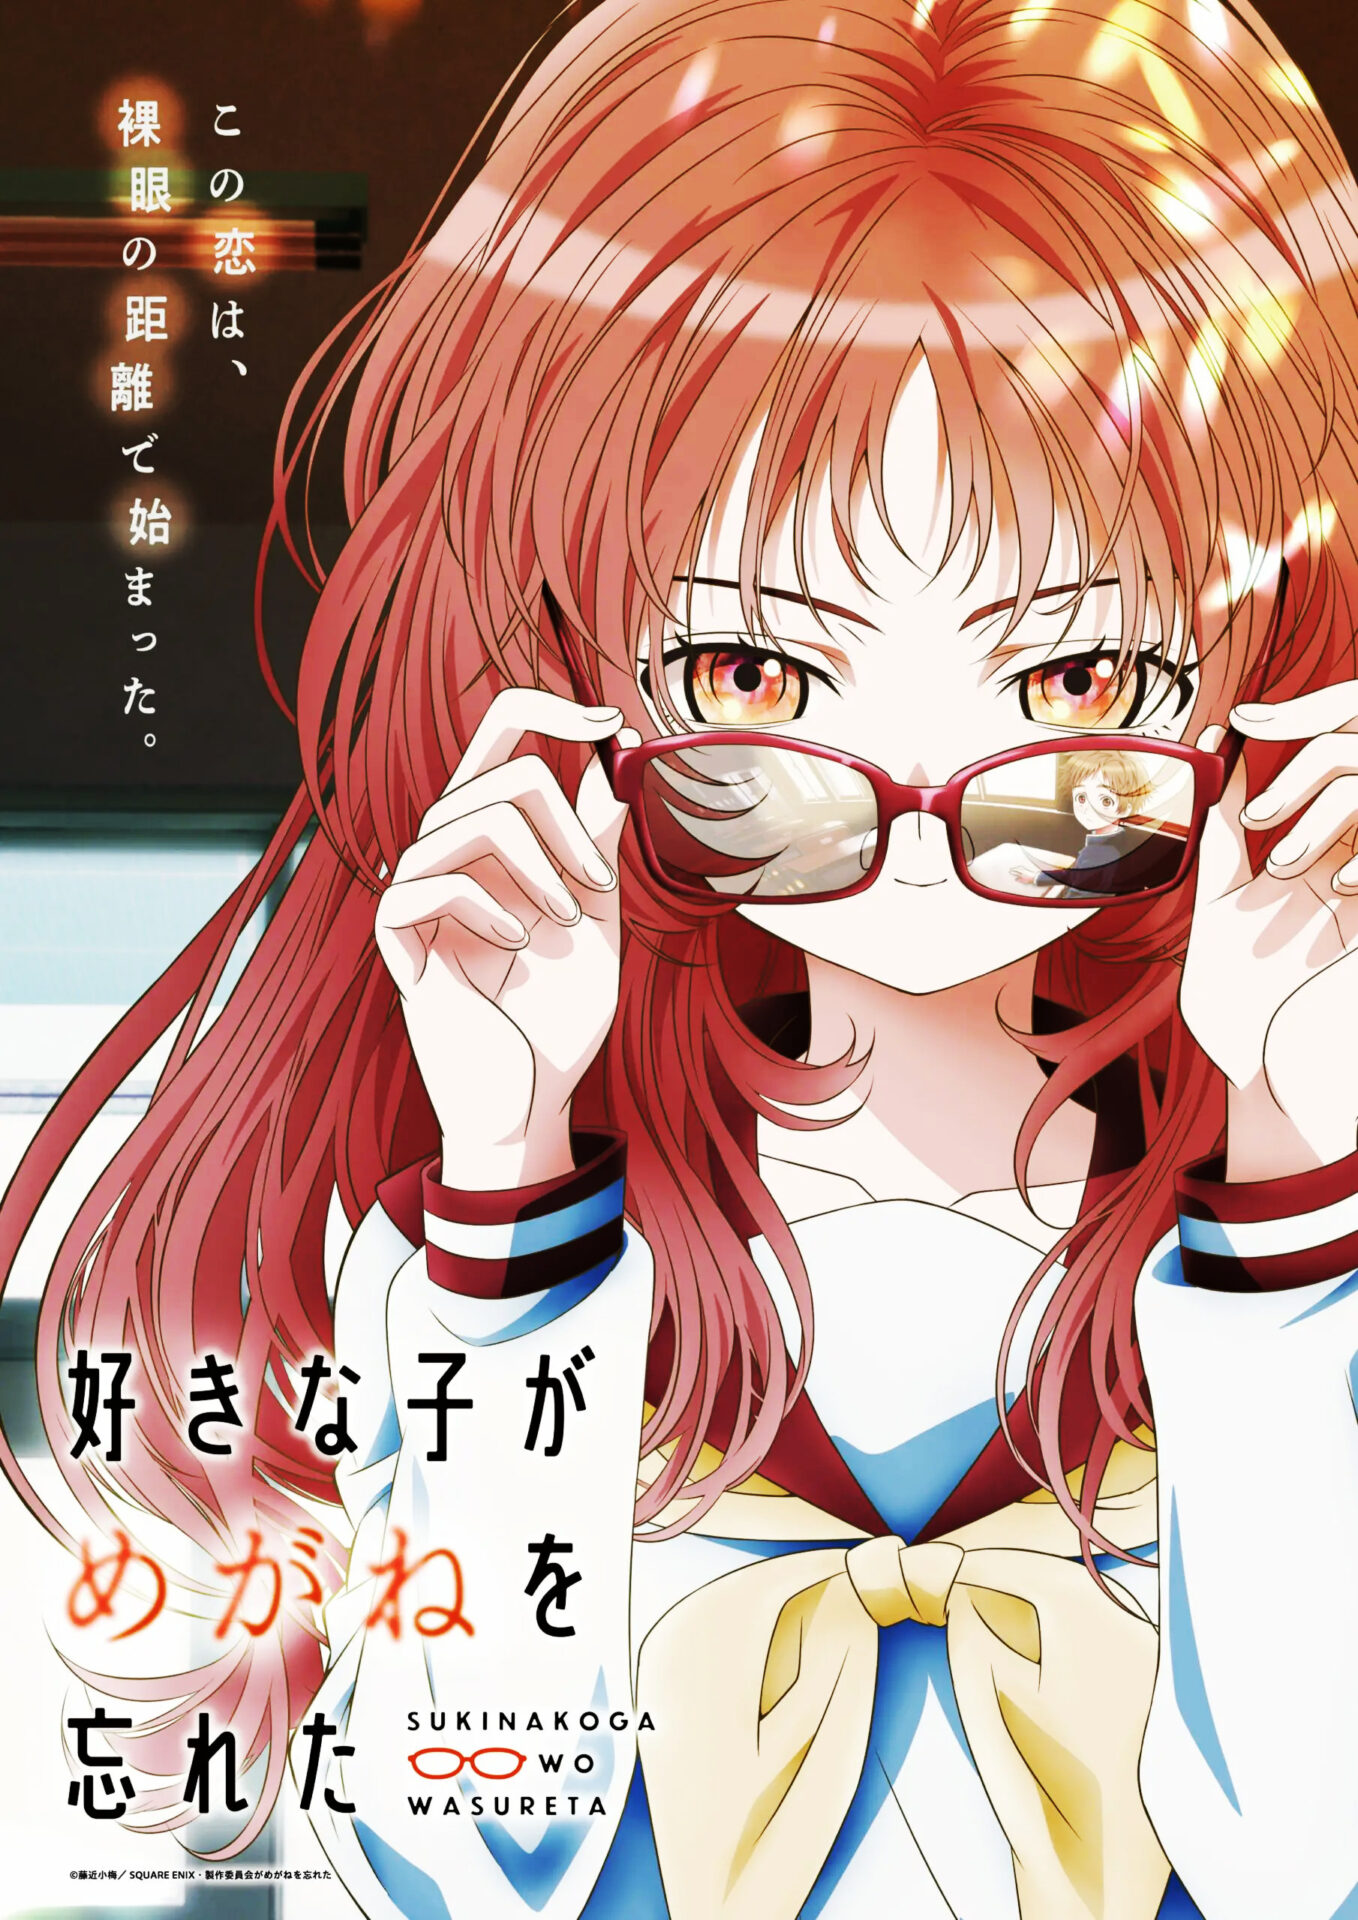 The Girl I Like Forgot Her Glasses Anime Visual